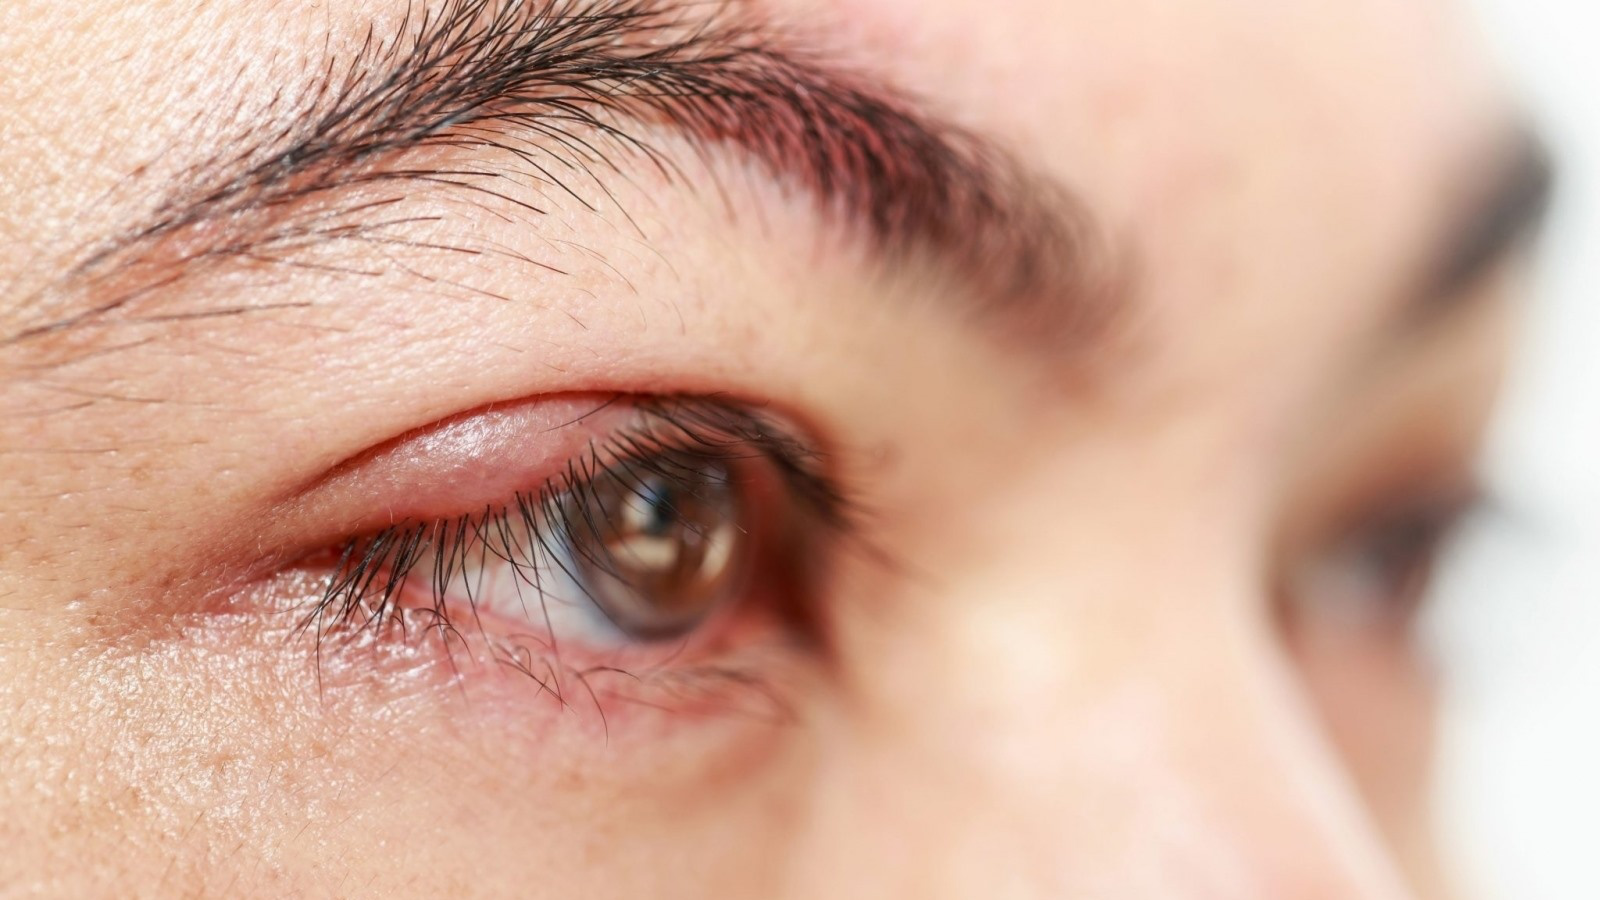 Cách chữa mẹo chữa lẹo mắt bằng chỉ hiệu quả và an toàn tại nhà